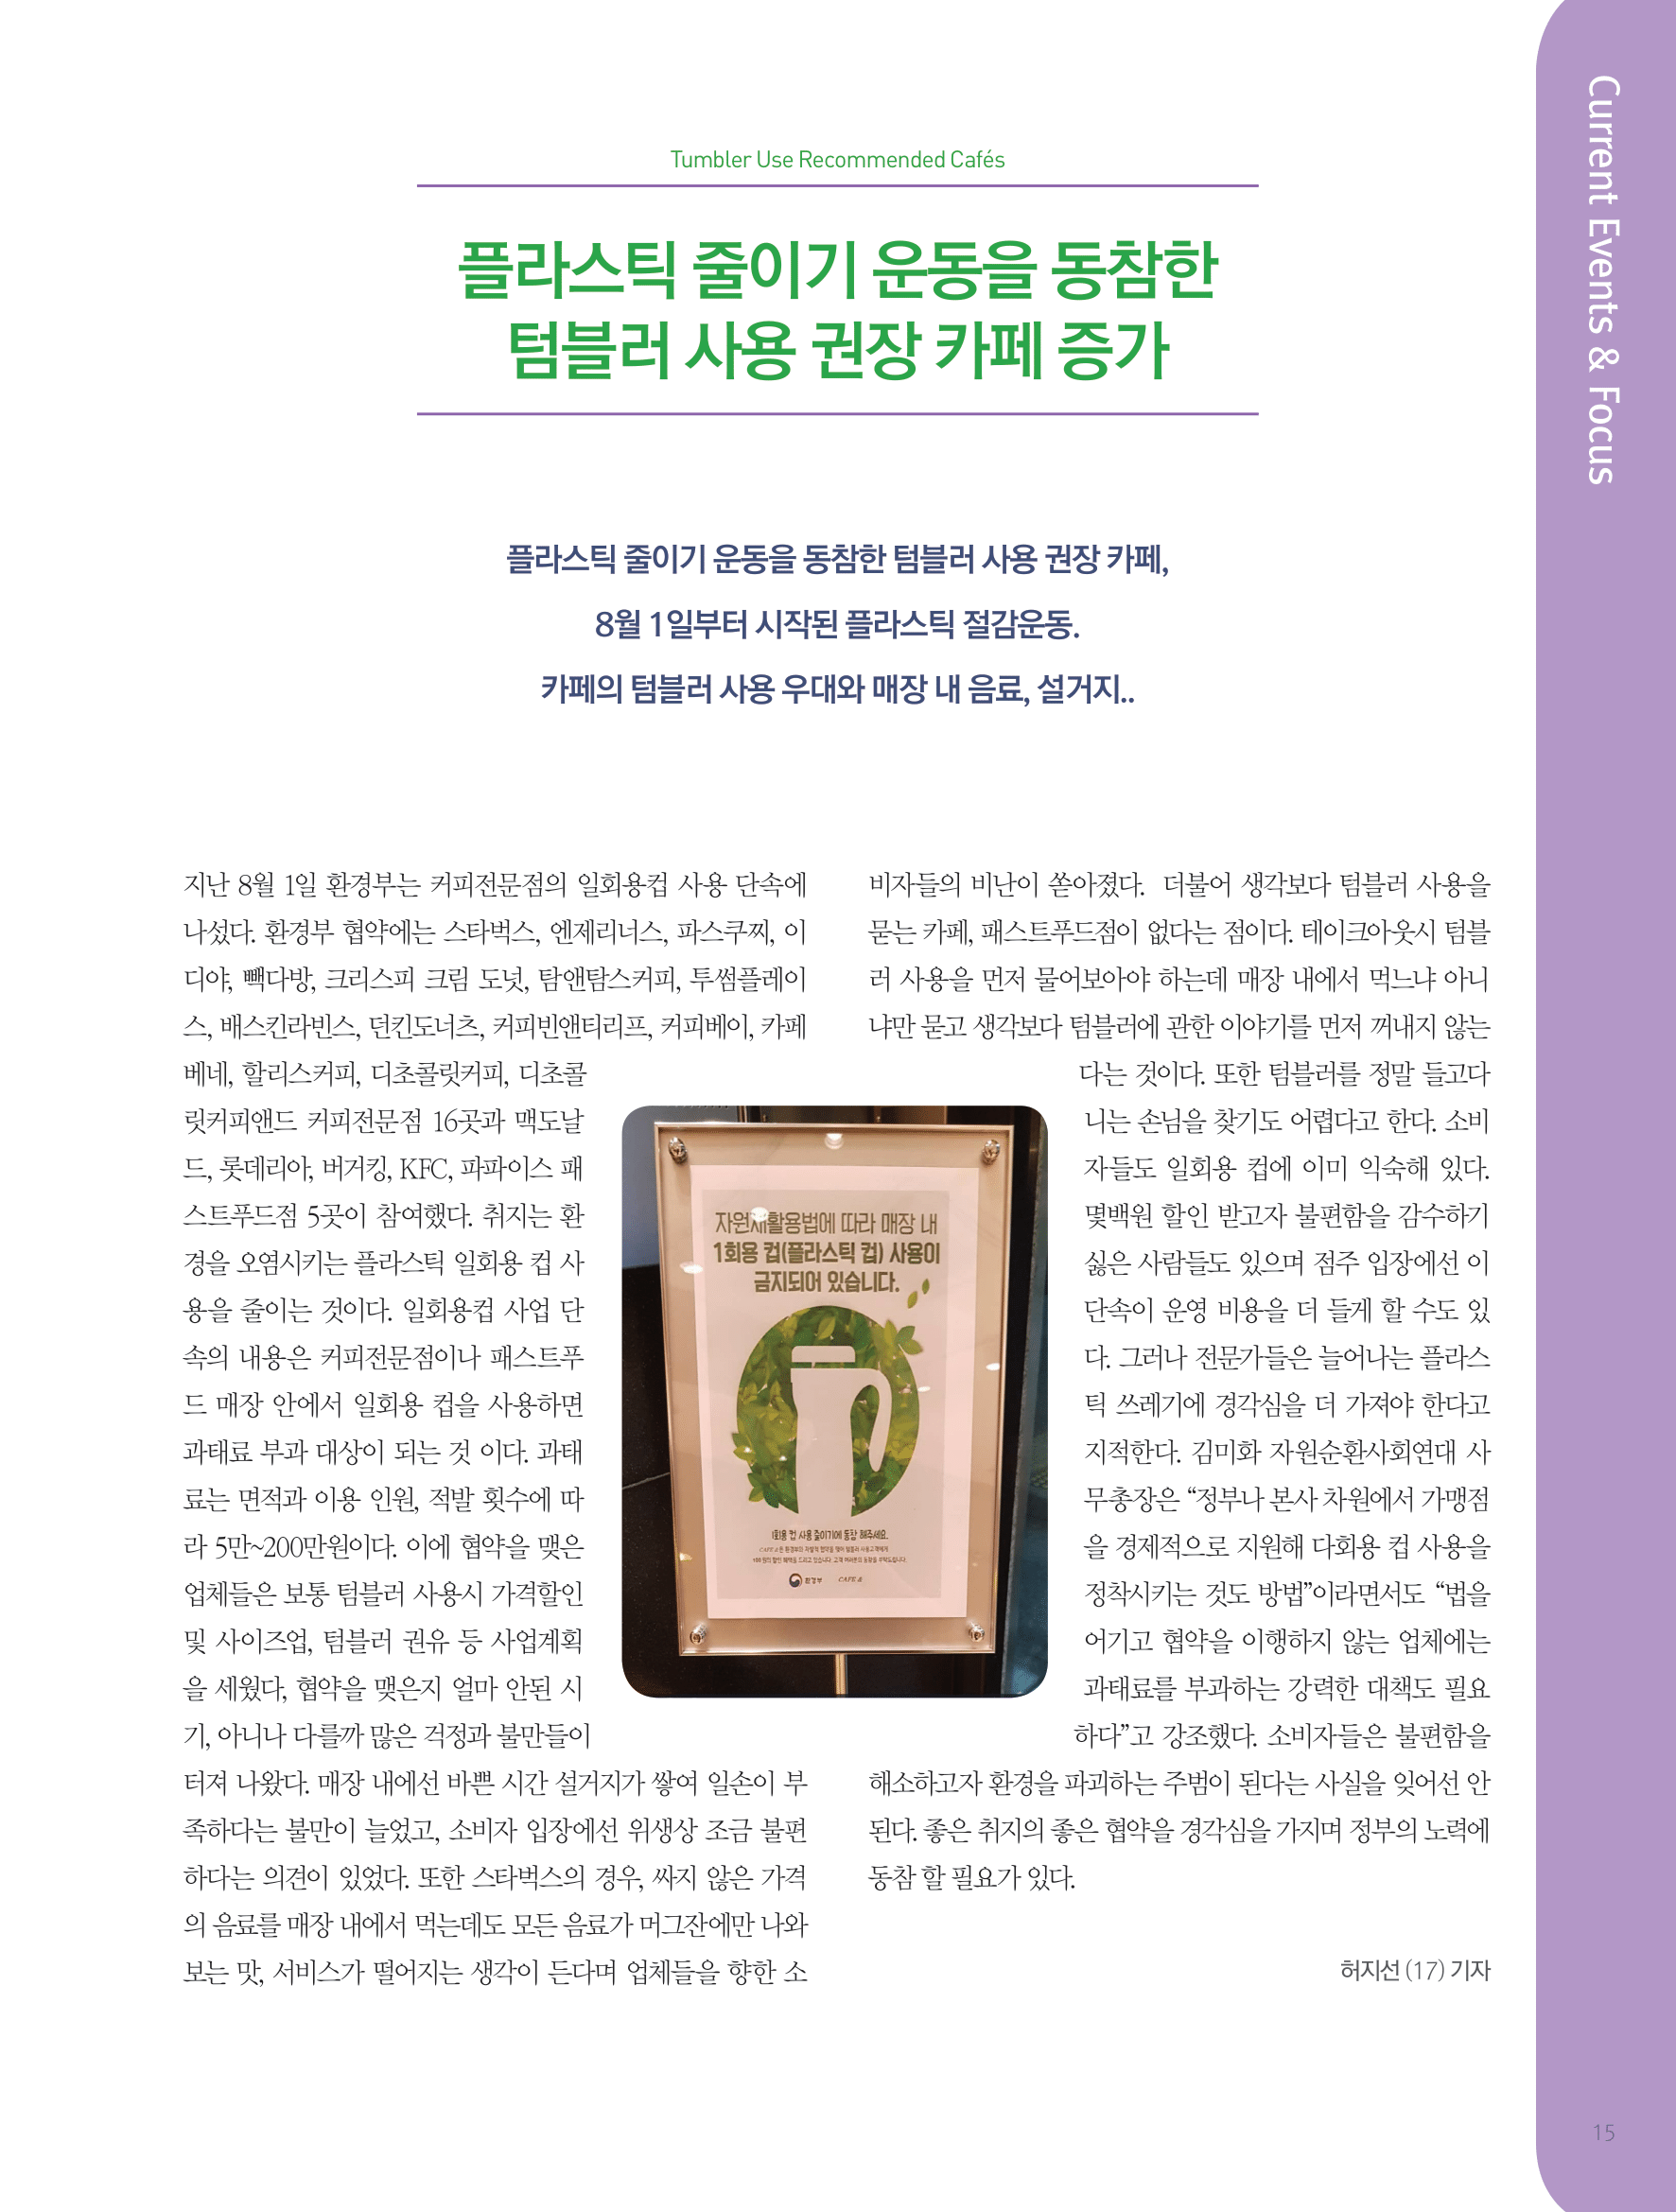 뜻새김 신문 72호 15